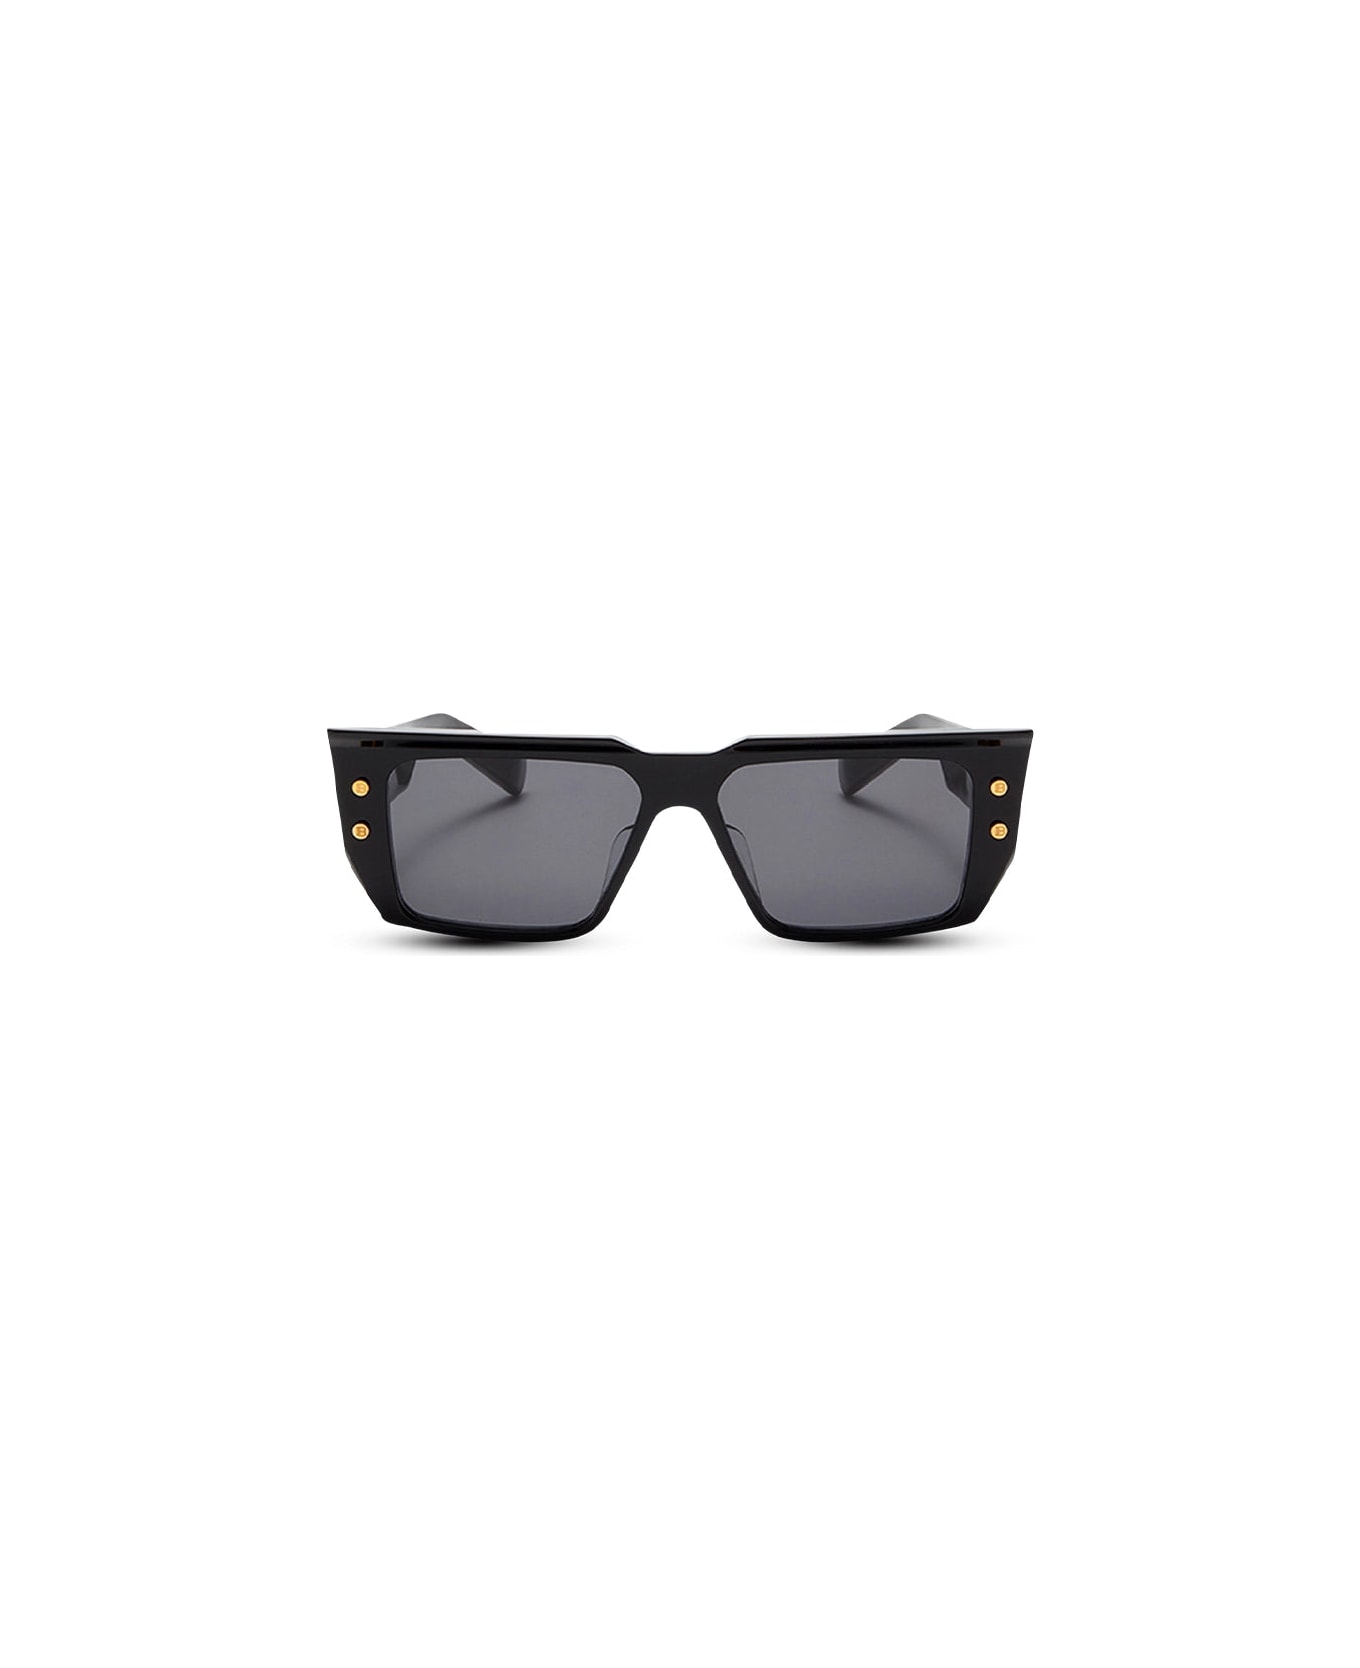 Balmain B-vi - Black / Gold Sunglasses pilot-frame Sunglasses pilot-frame - gold, black